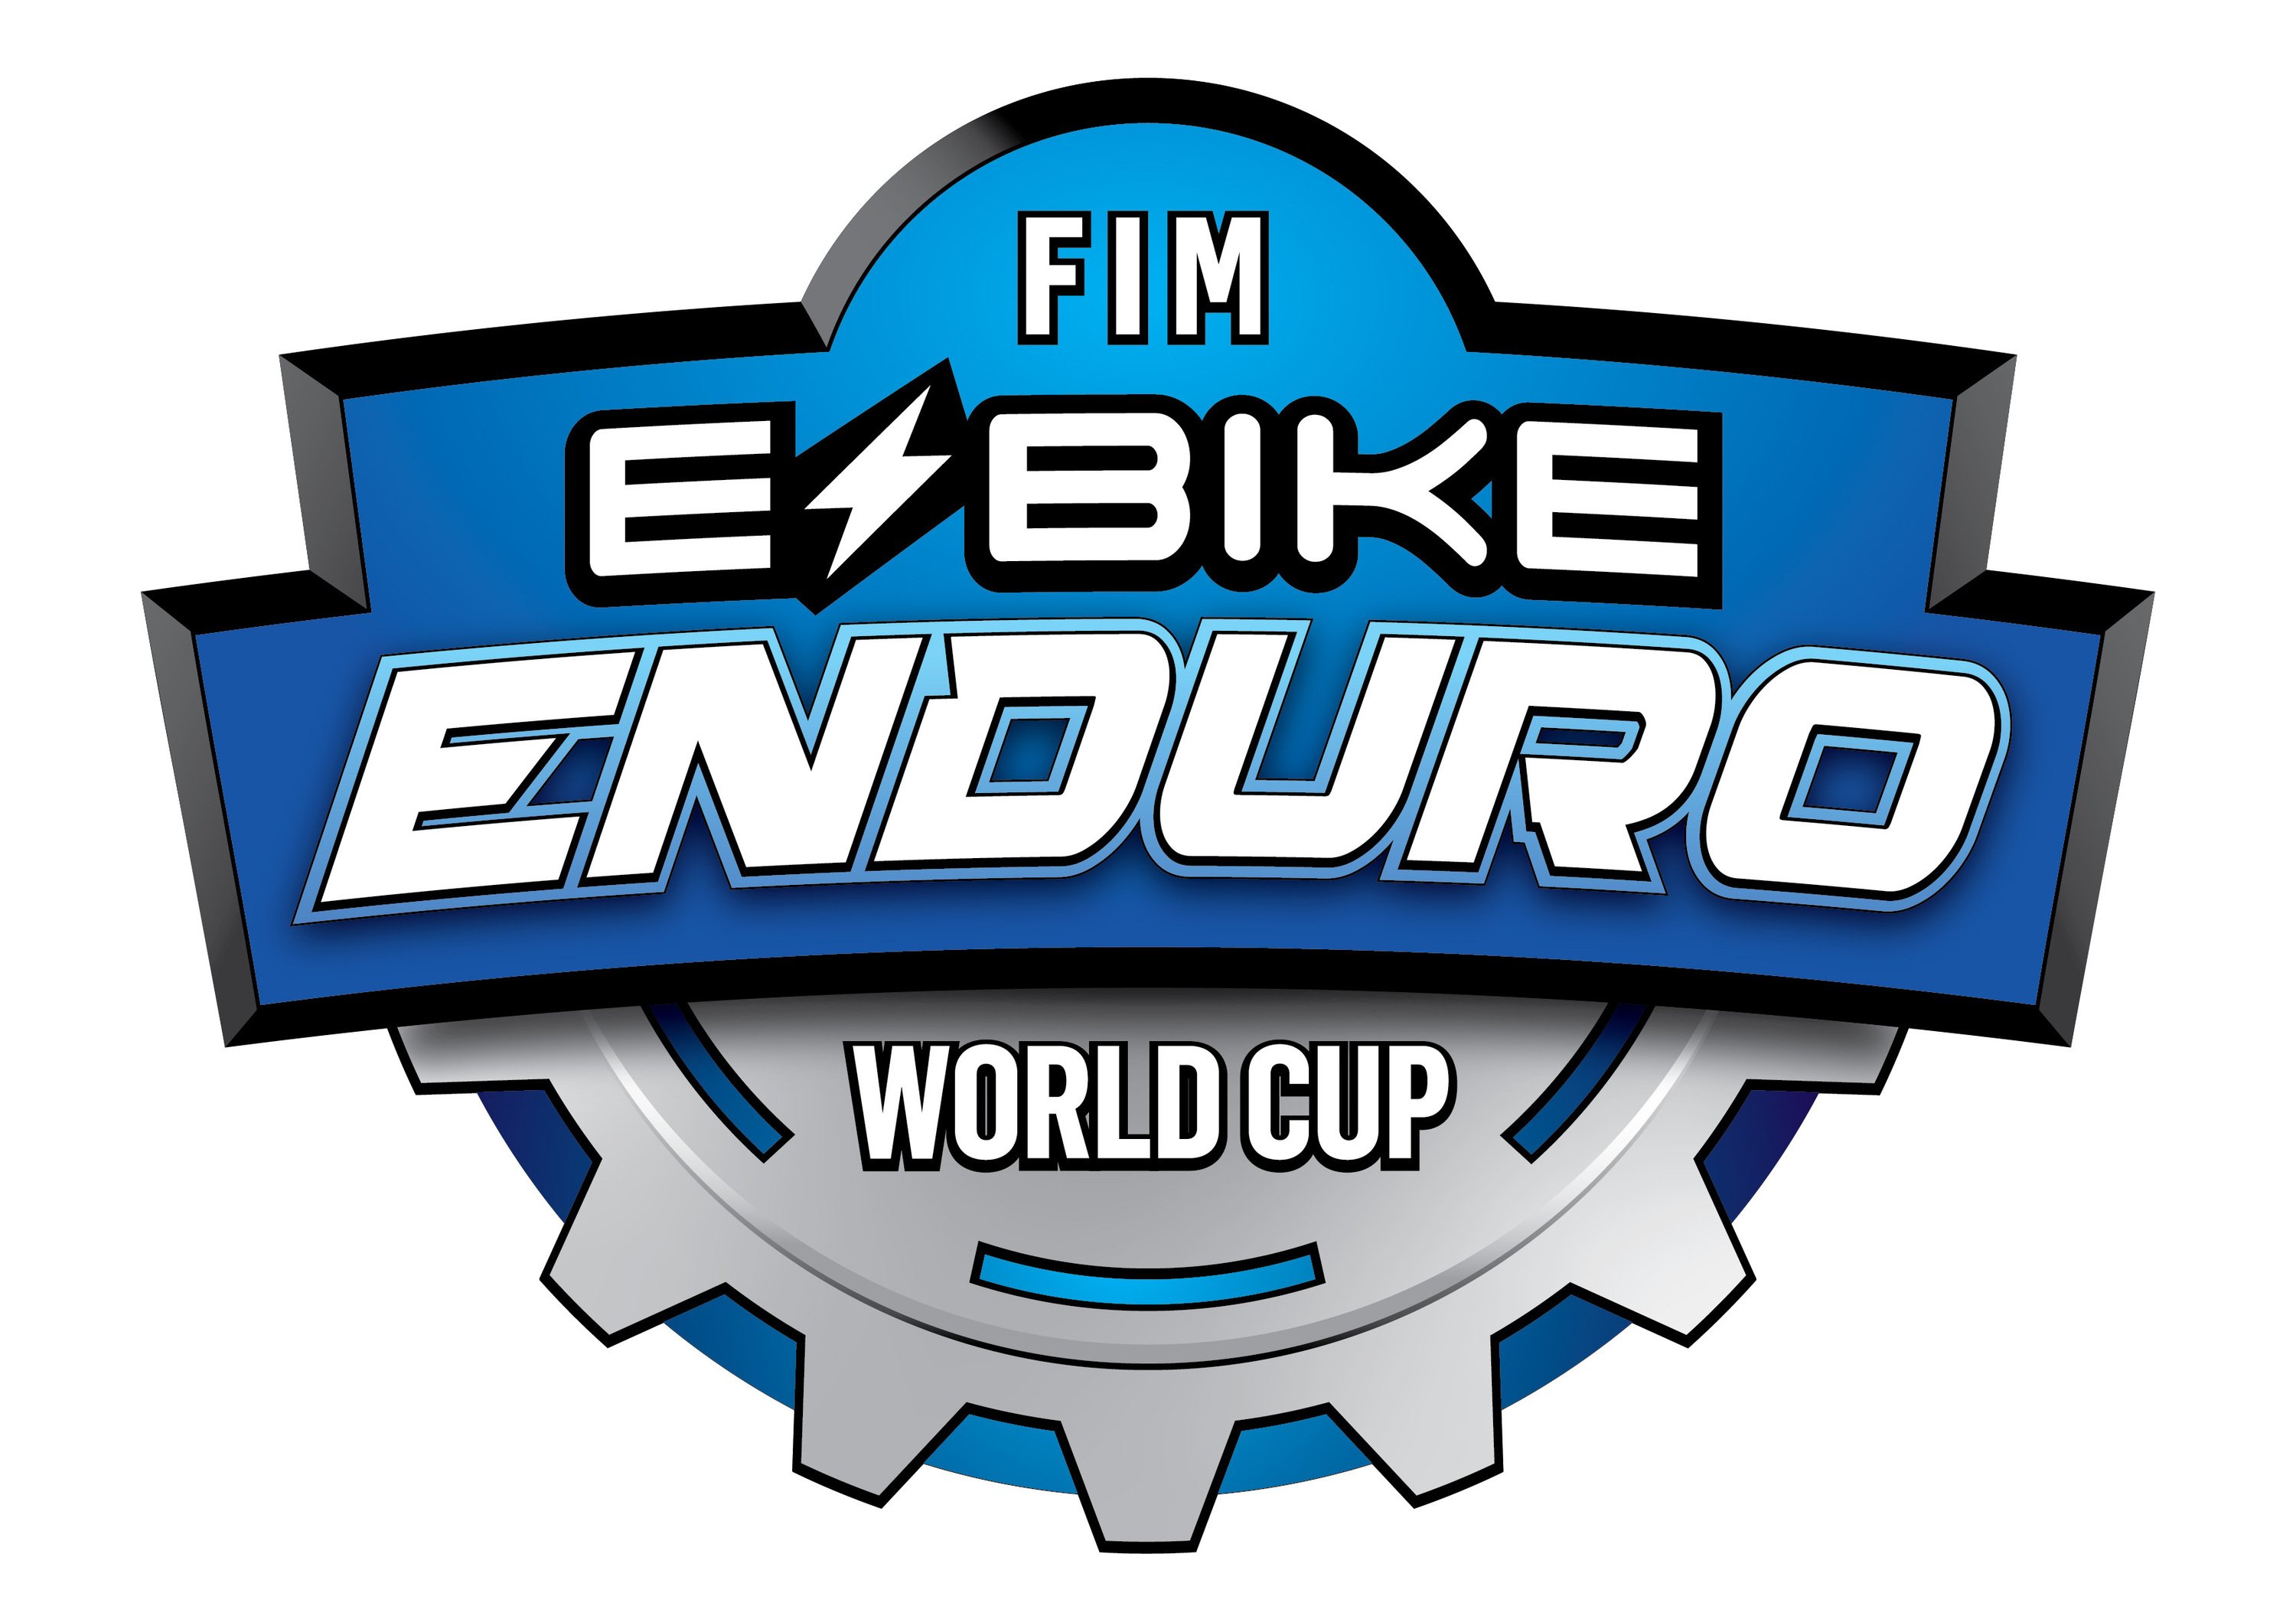 FIM eBike Enduro World Cup